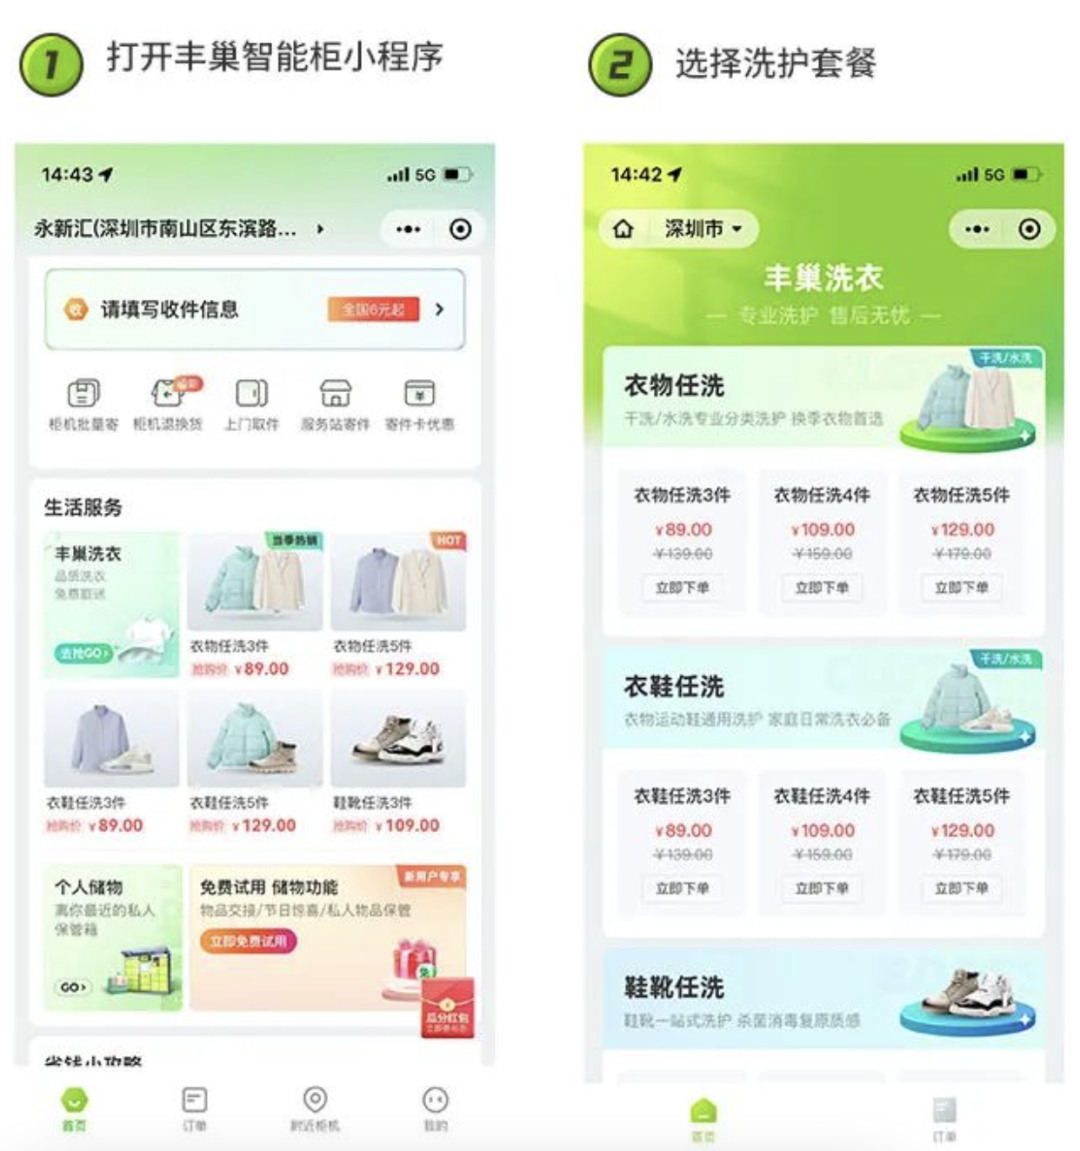 农夫山泉卖盖浇饭；刘强东套现18亿；步步高借款8.27亿